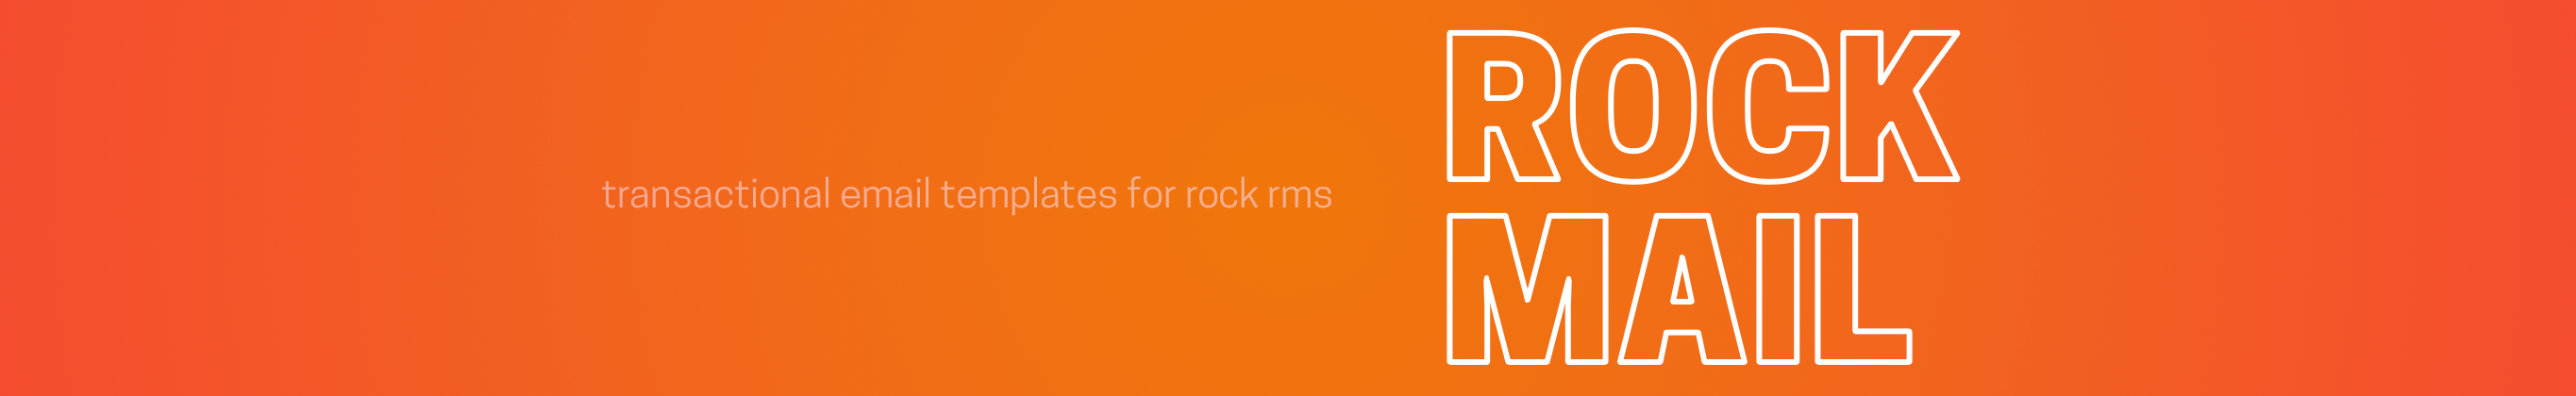 Rock RMS